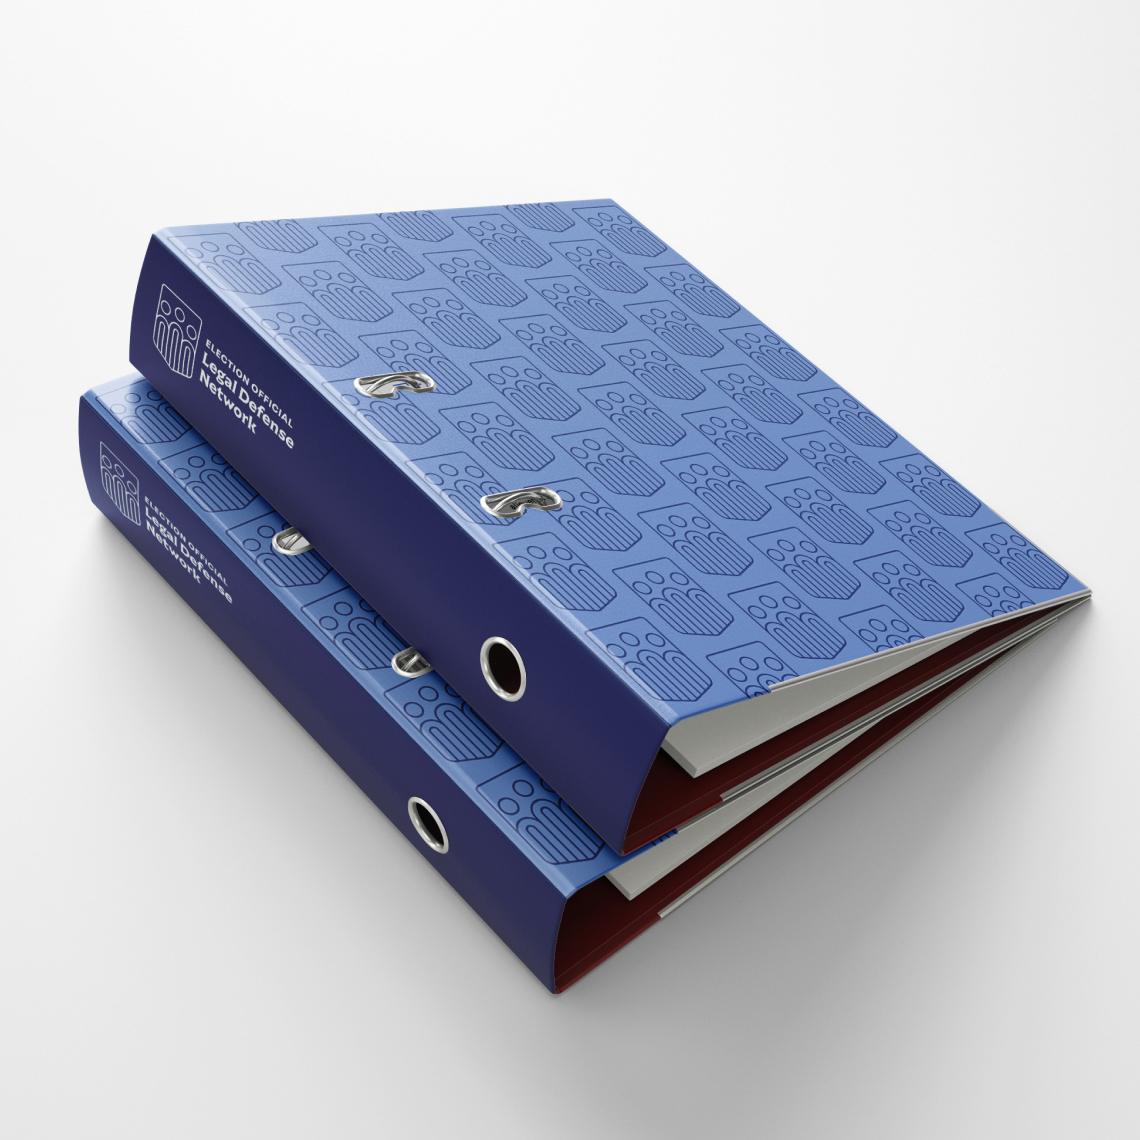 EOLDN binder designed by Kilter